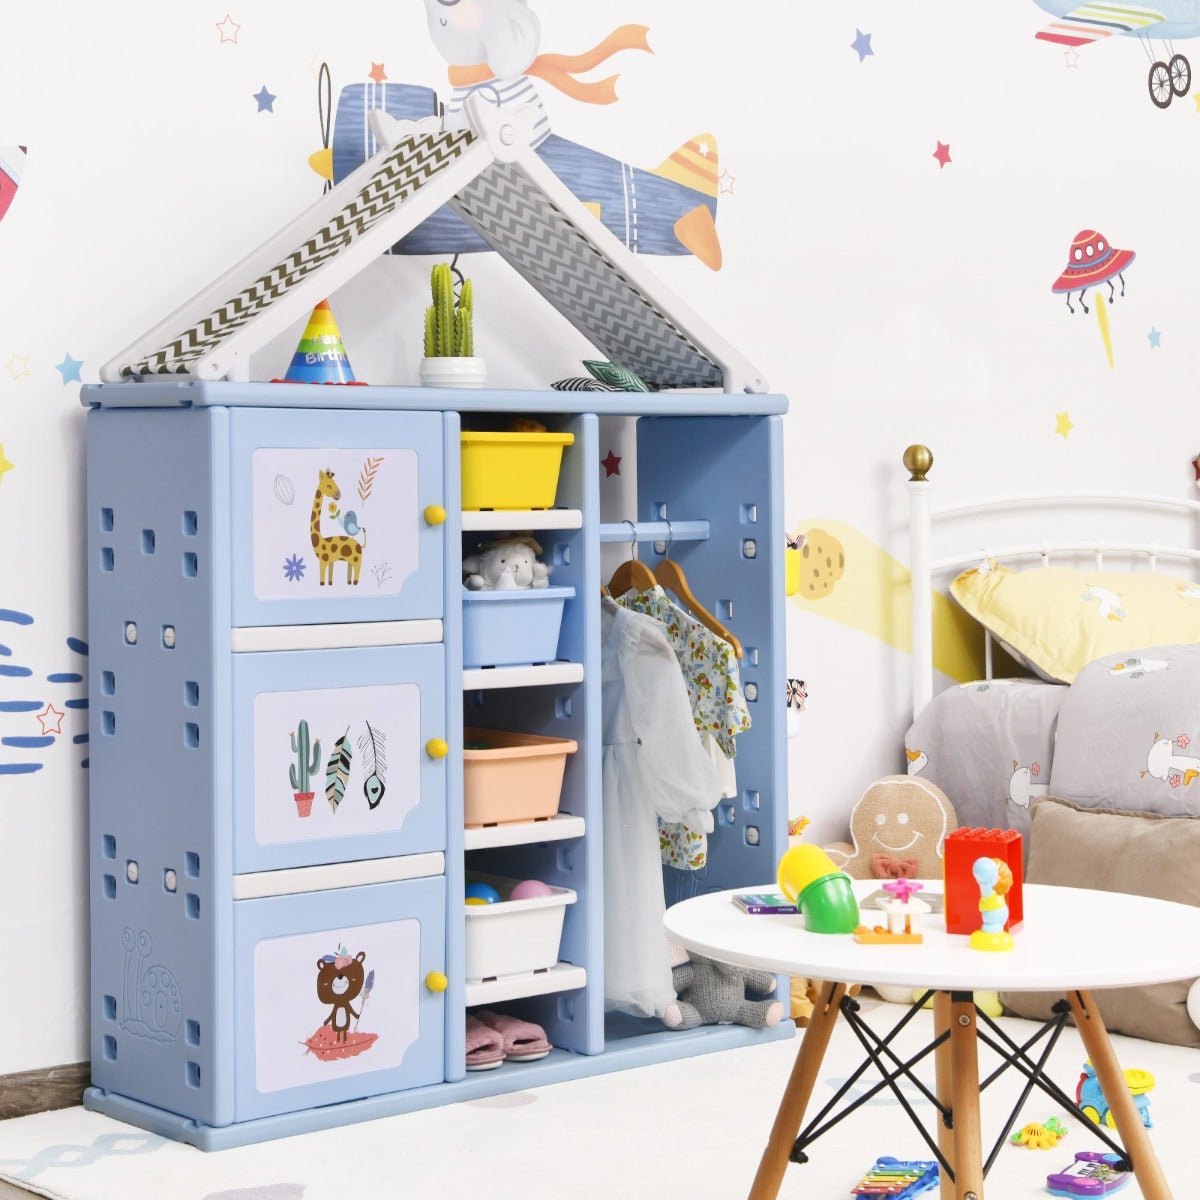 Kids Dresser Storage Closet - Blue Pretend Costume Organizer for Playtime